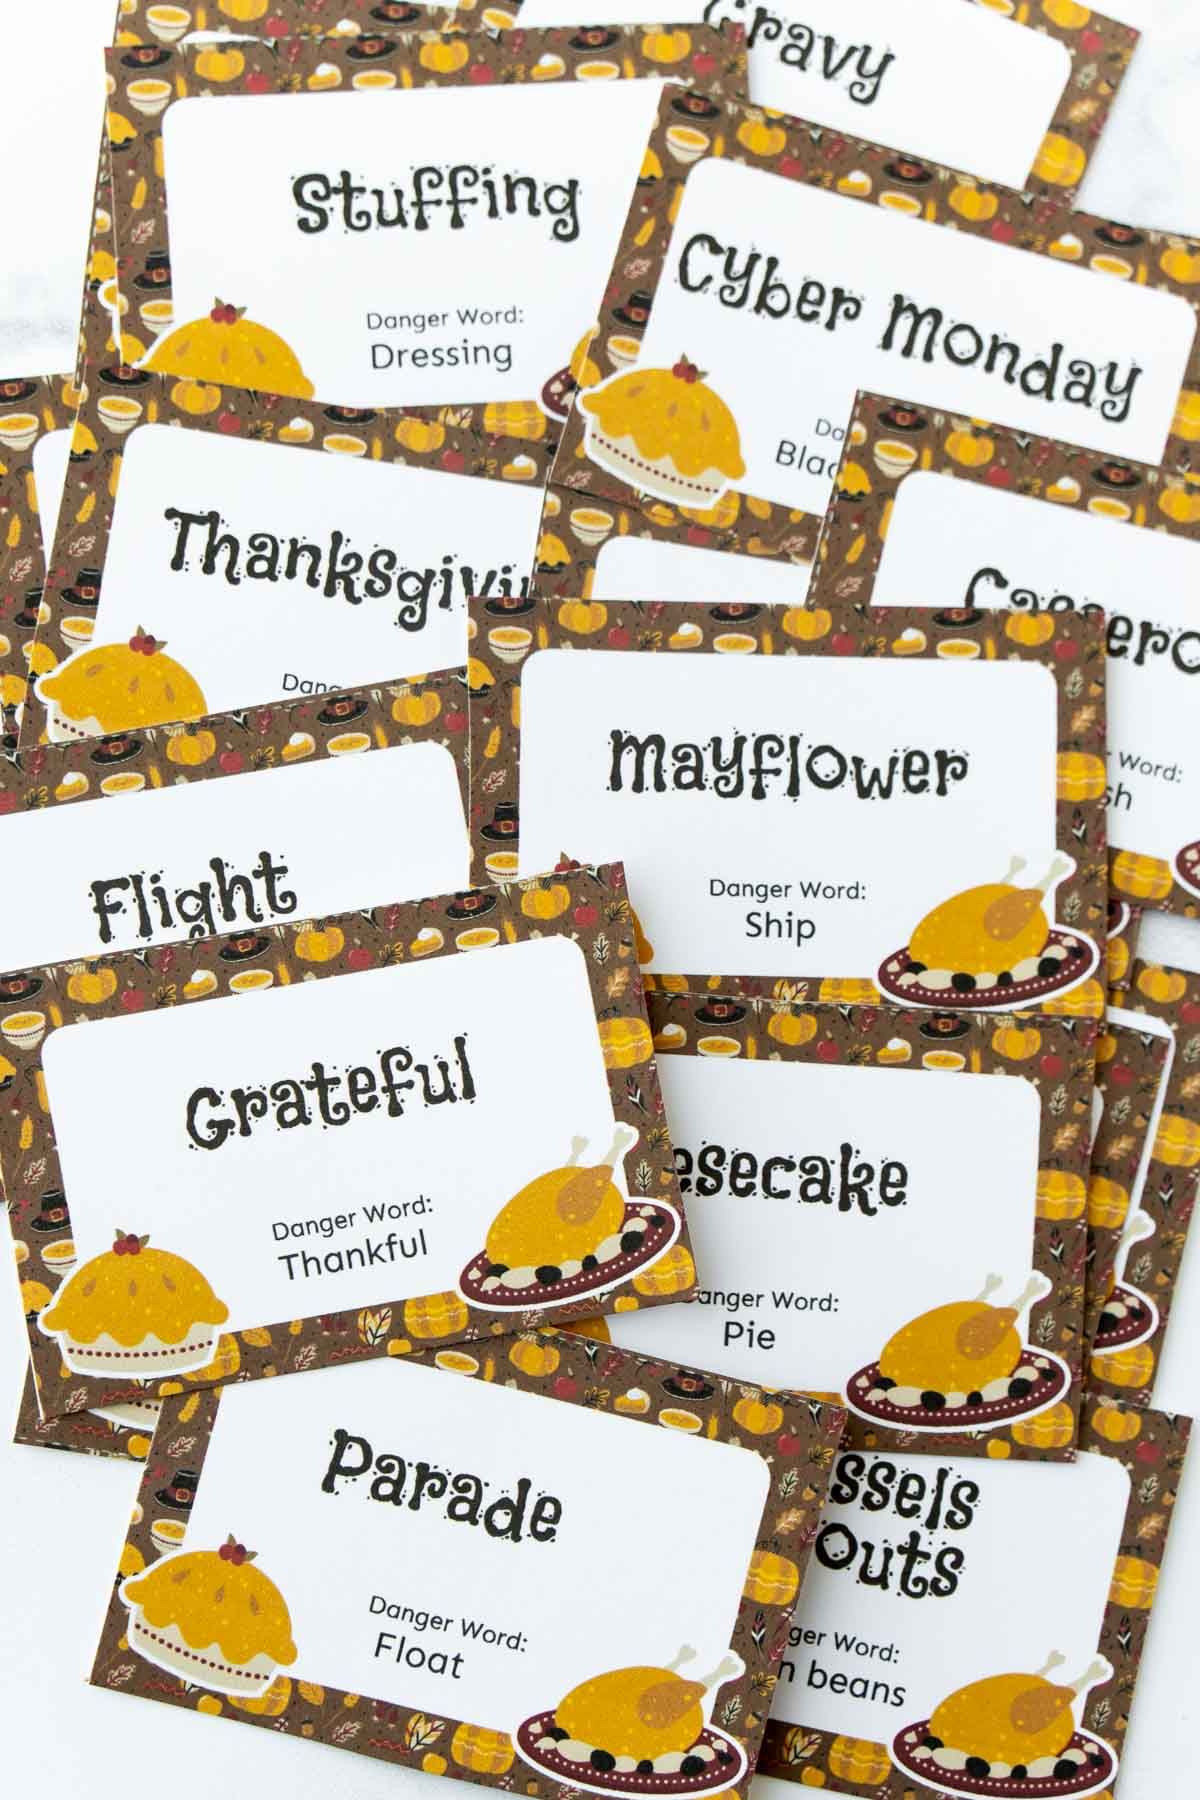 Thanksgiving gevaar woord kaarten uitgesneden en op een stapel gelegd